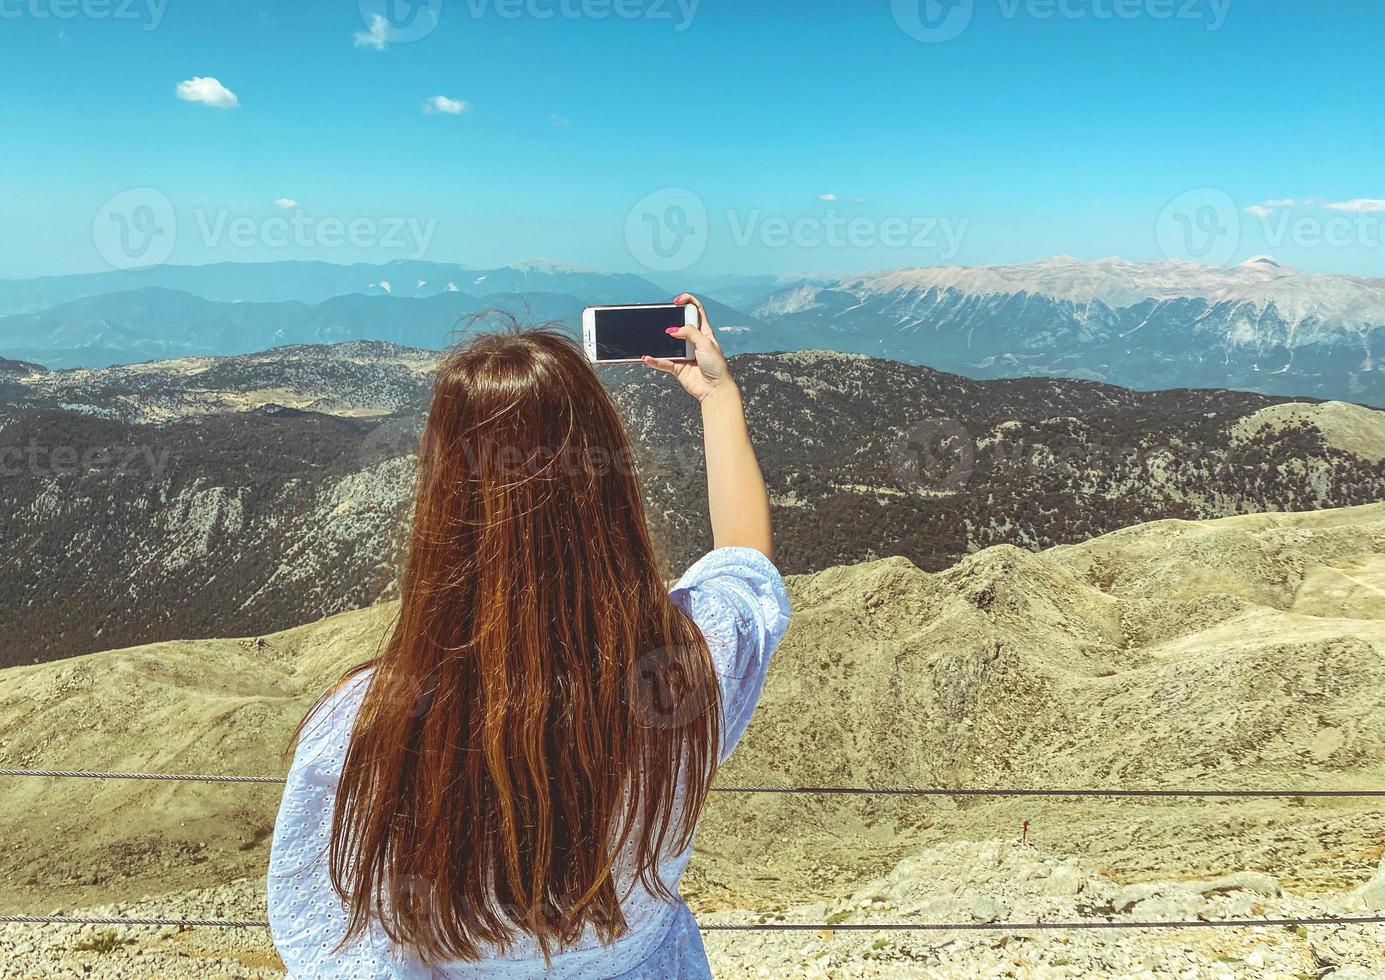 Ein Mädchen in einem weißen Kleid mit langen, dunklen Haaren auf der Aussichtsplattform macht ein Selfie. Foto von sich selbst vor dem Hintergrund einer wunderschönen Hochhausansicht